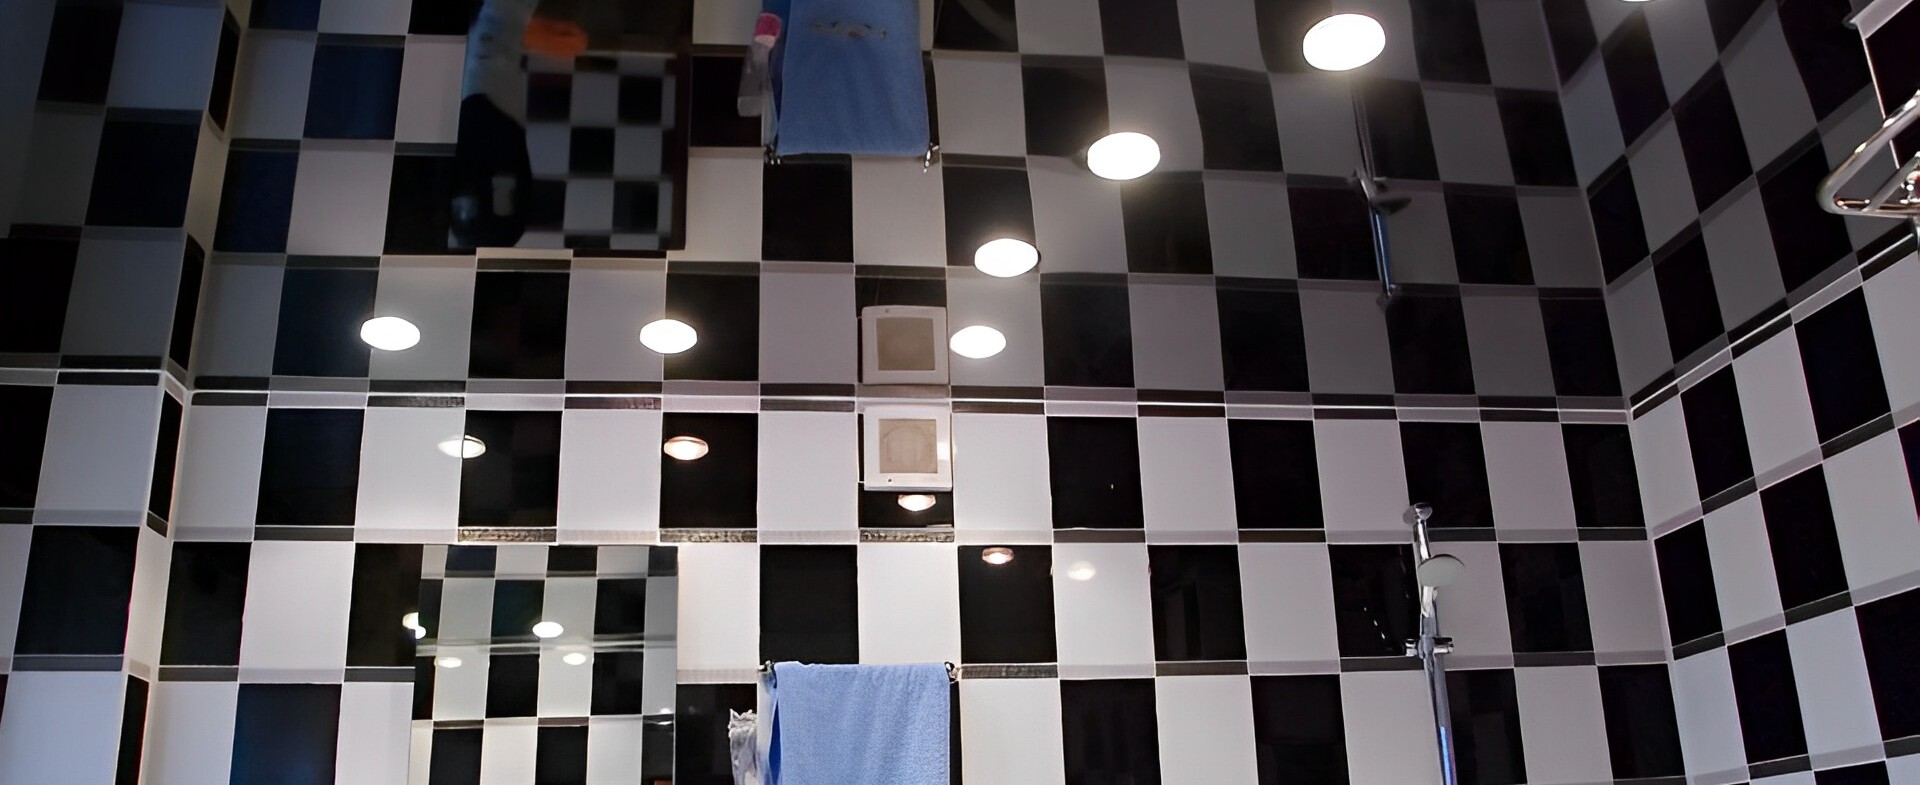 Ванна плитка черно-белая шахматы и чёрный глянцевый потолок